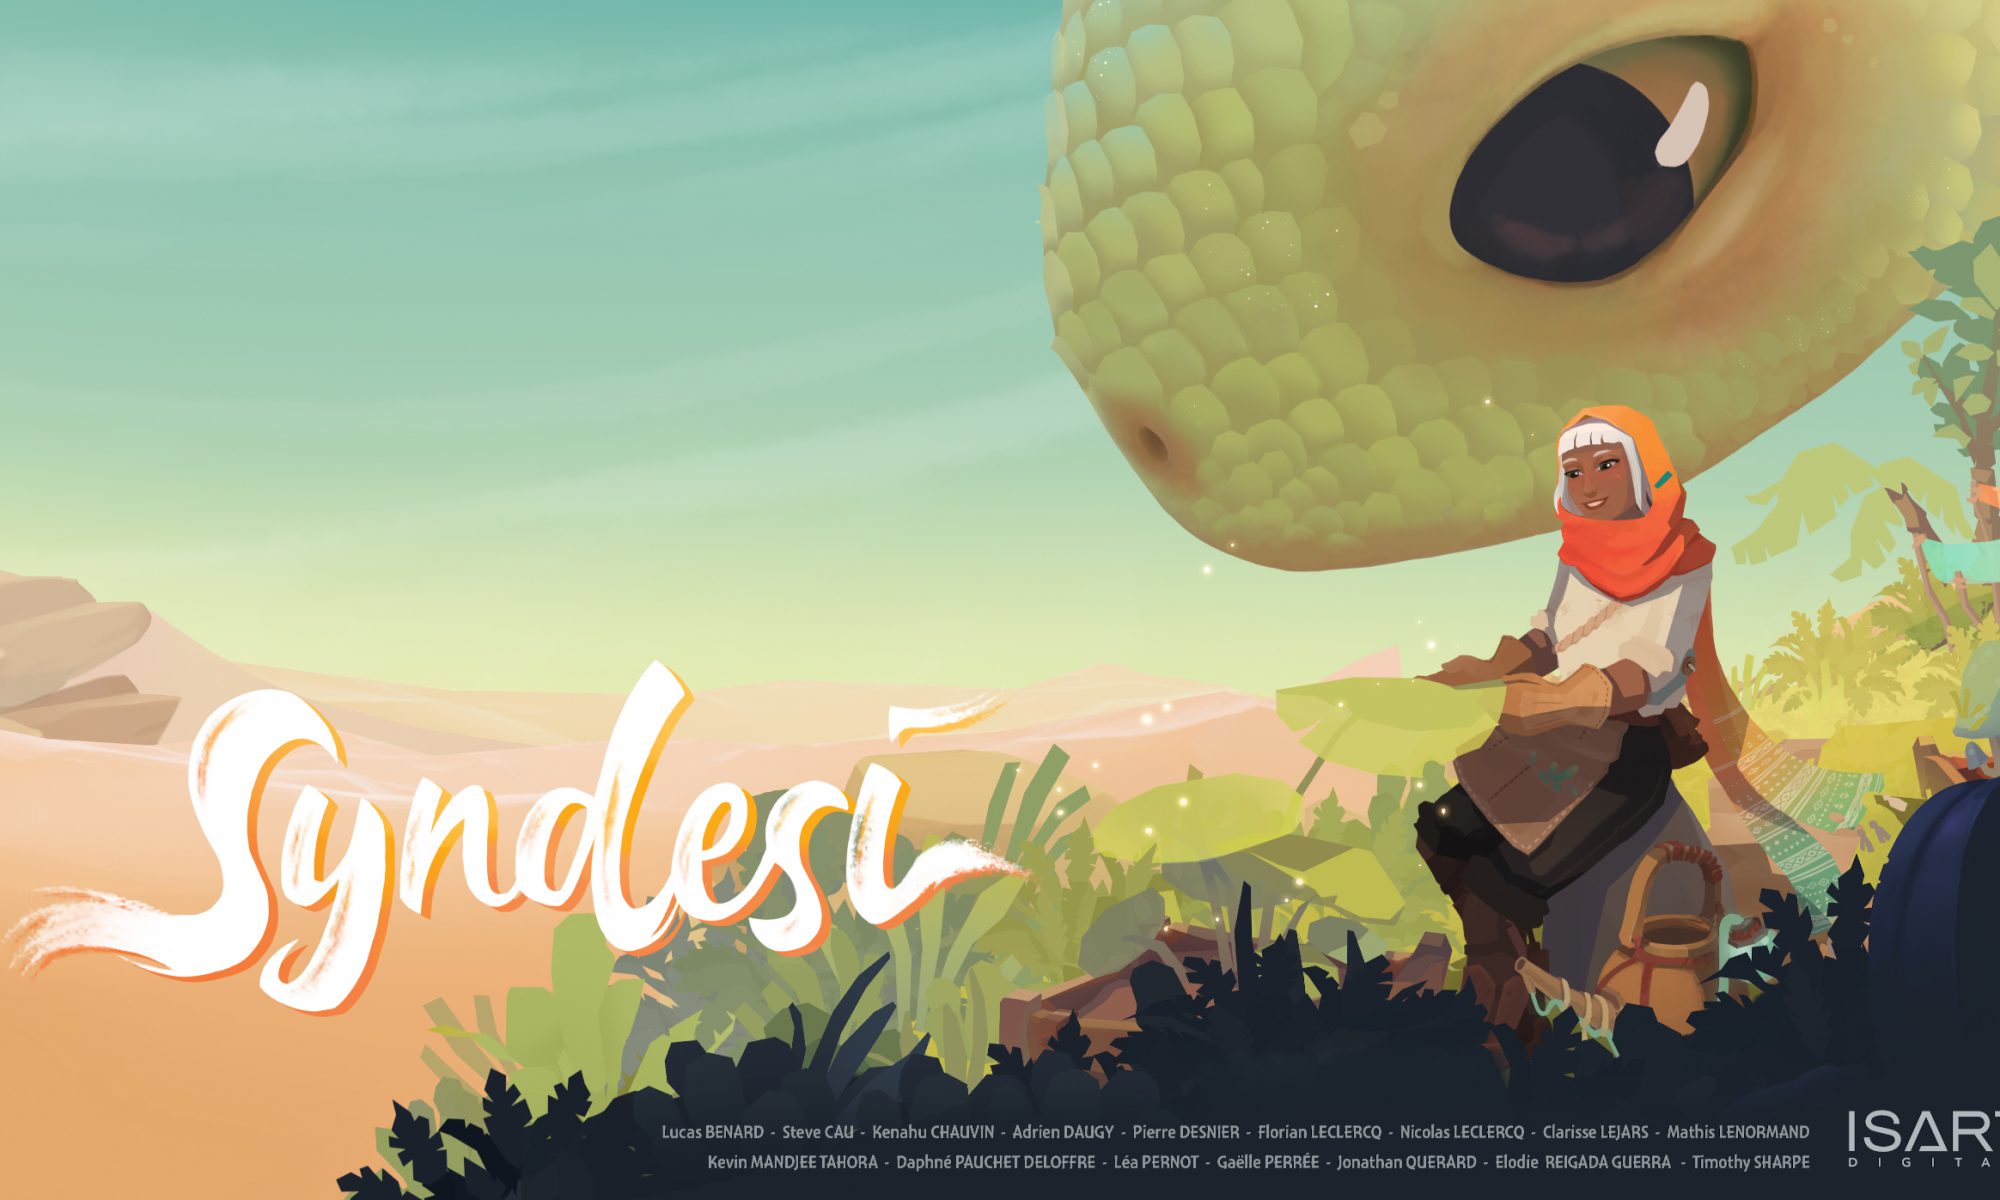 Ecran titre du jeu projet étudiant Syndesi. La protagoniste Saï y est représenté prenant soin d'une plante dans un oasis au milieu du désert tandis que, derrière elle, Nilah la créature géante et amicale l'observe avec attention. Site de Lucas BENARD.